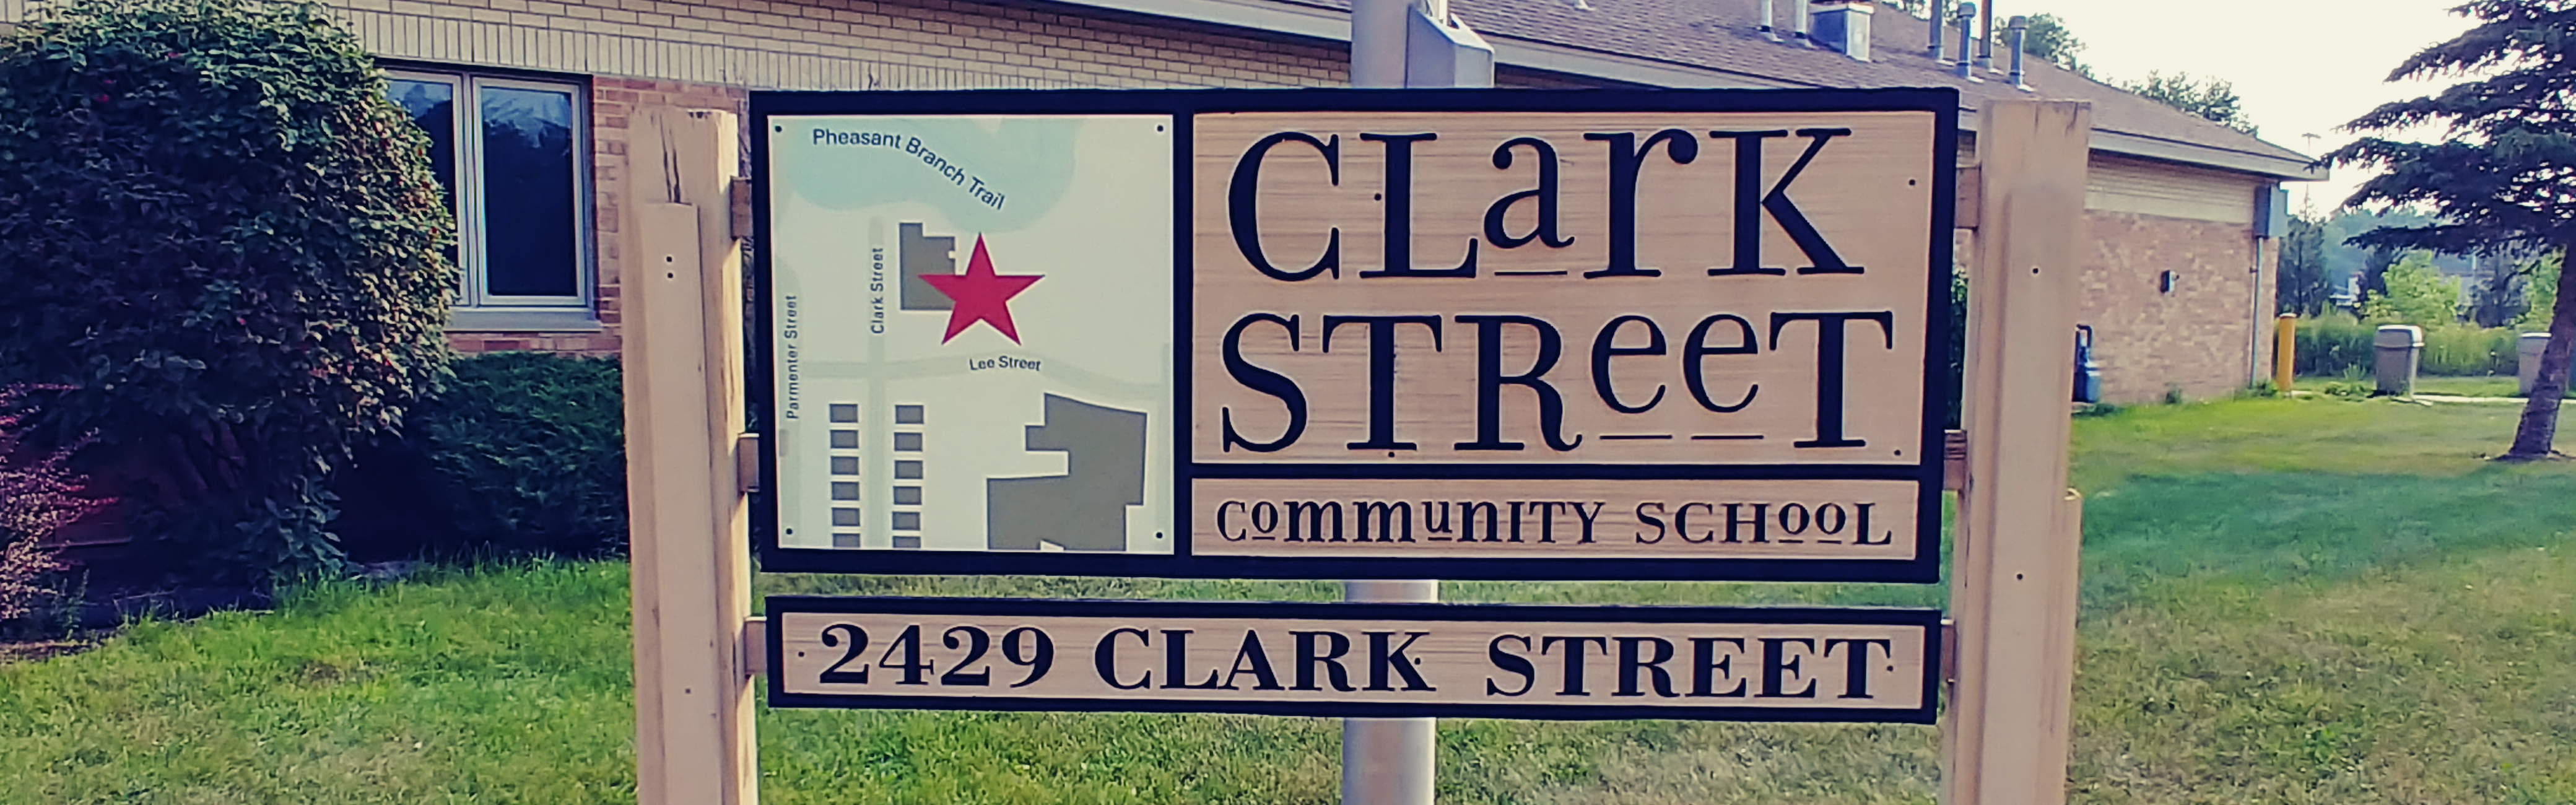 Clark Street Community School sign in front of the school